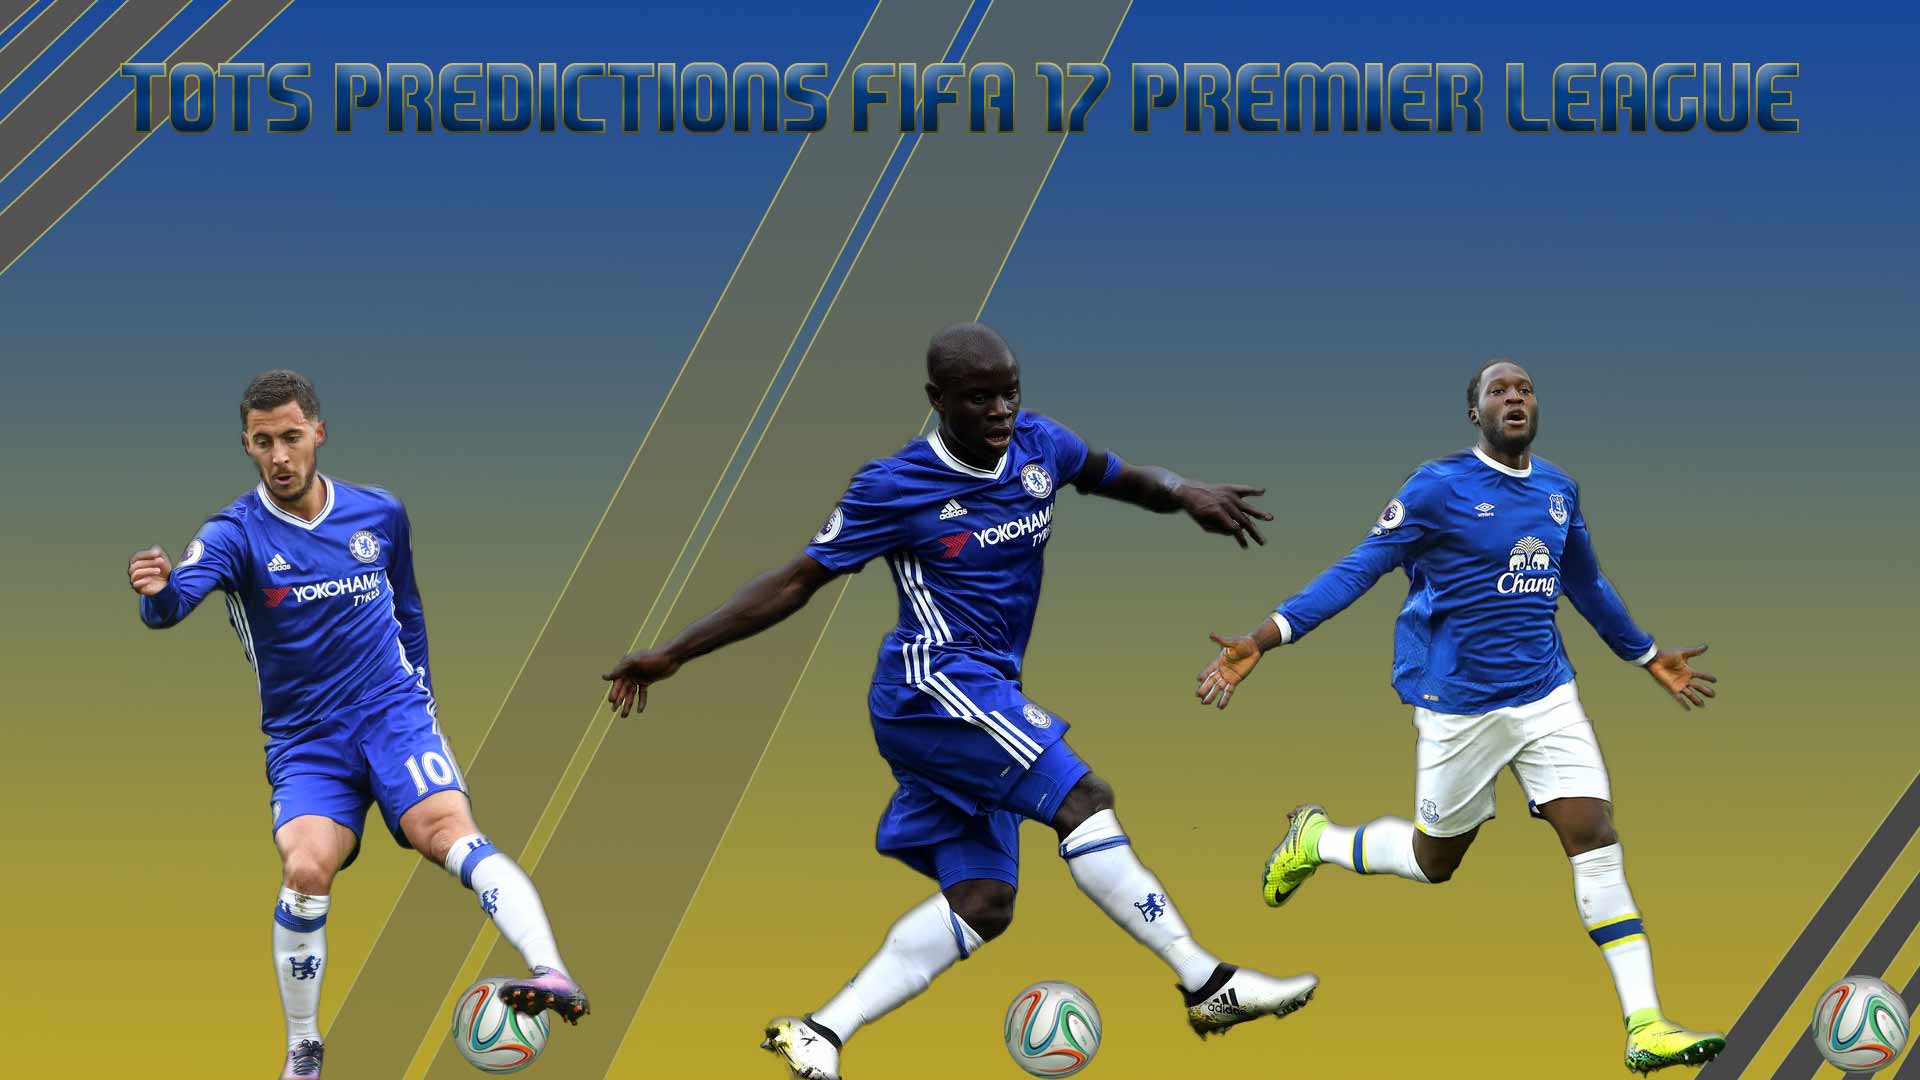 Tots Predictions Fifa 17 Premier League - Kick Up A Soccer Ball - HD Wallpaper 